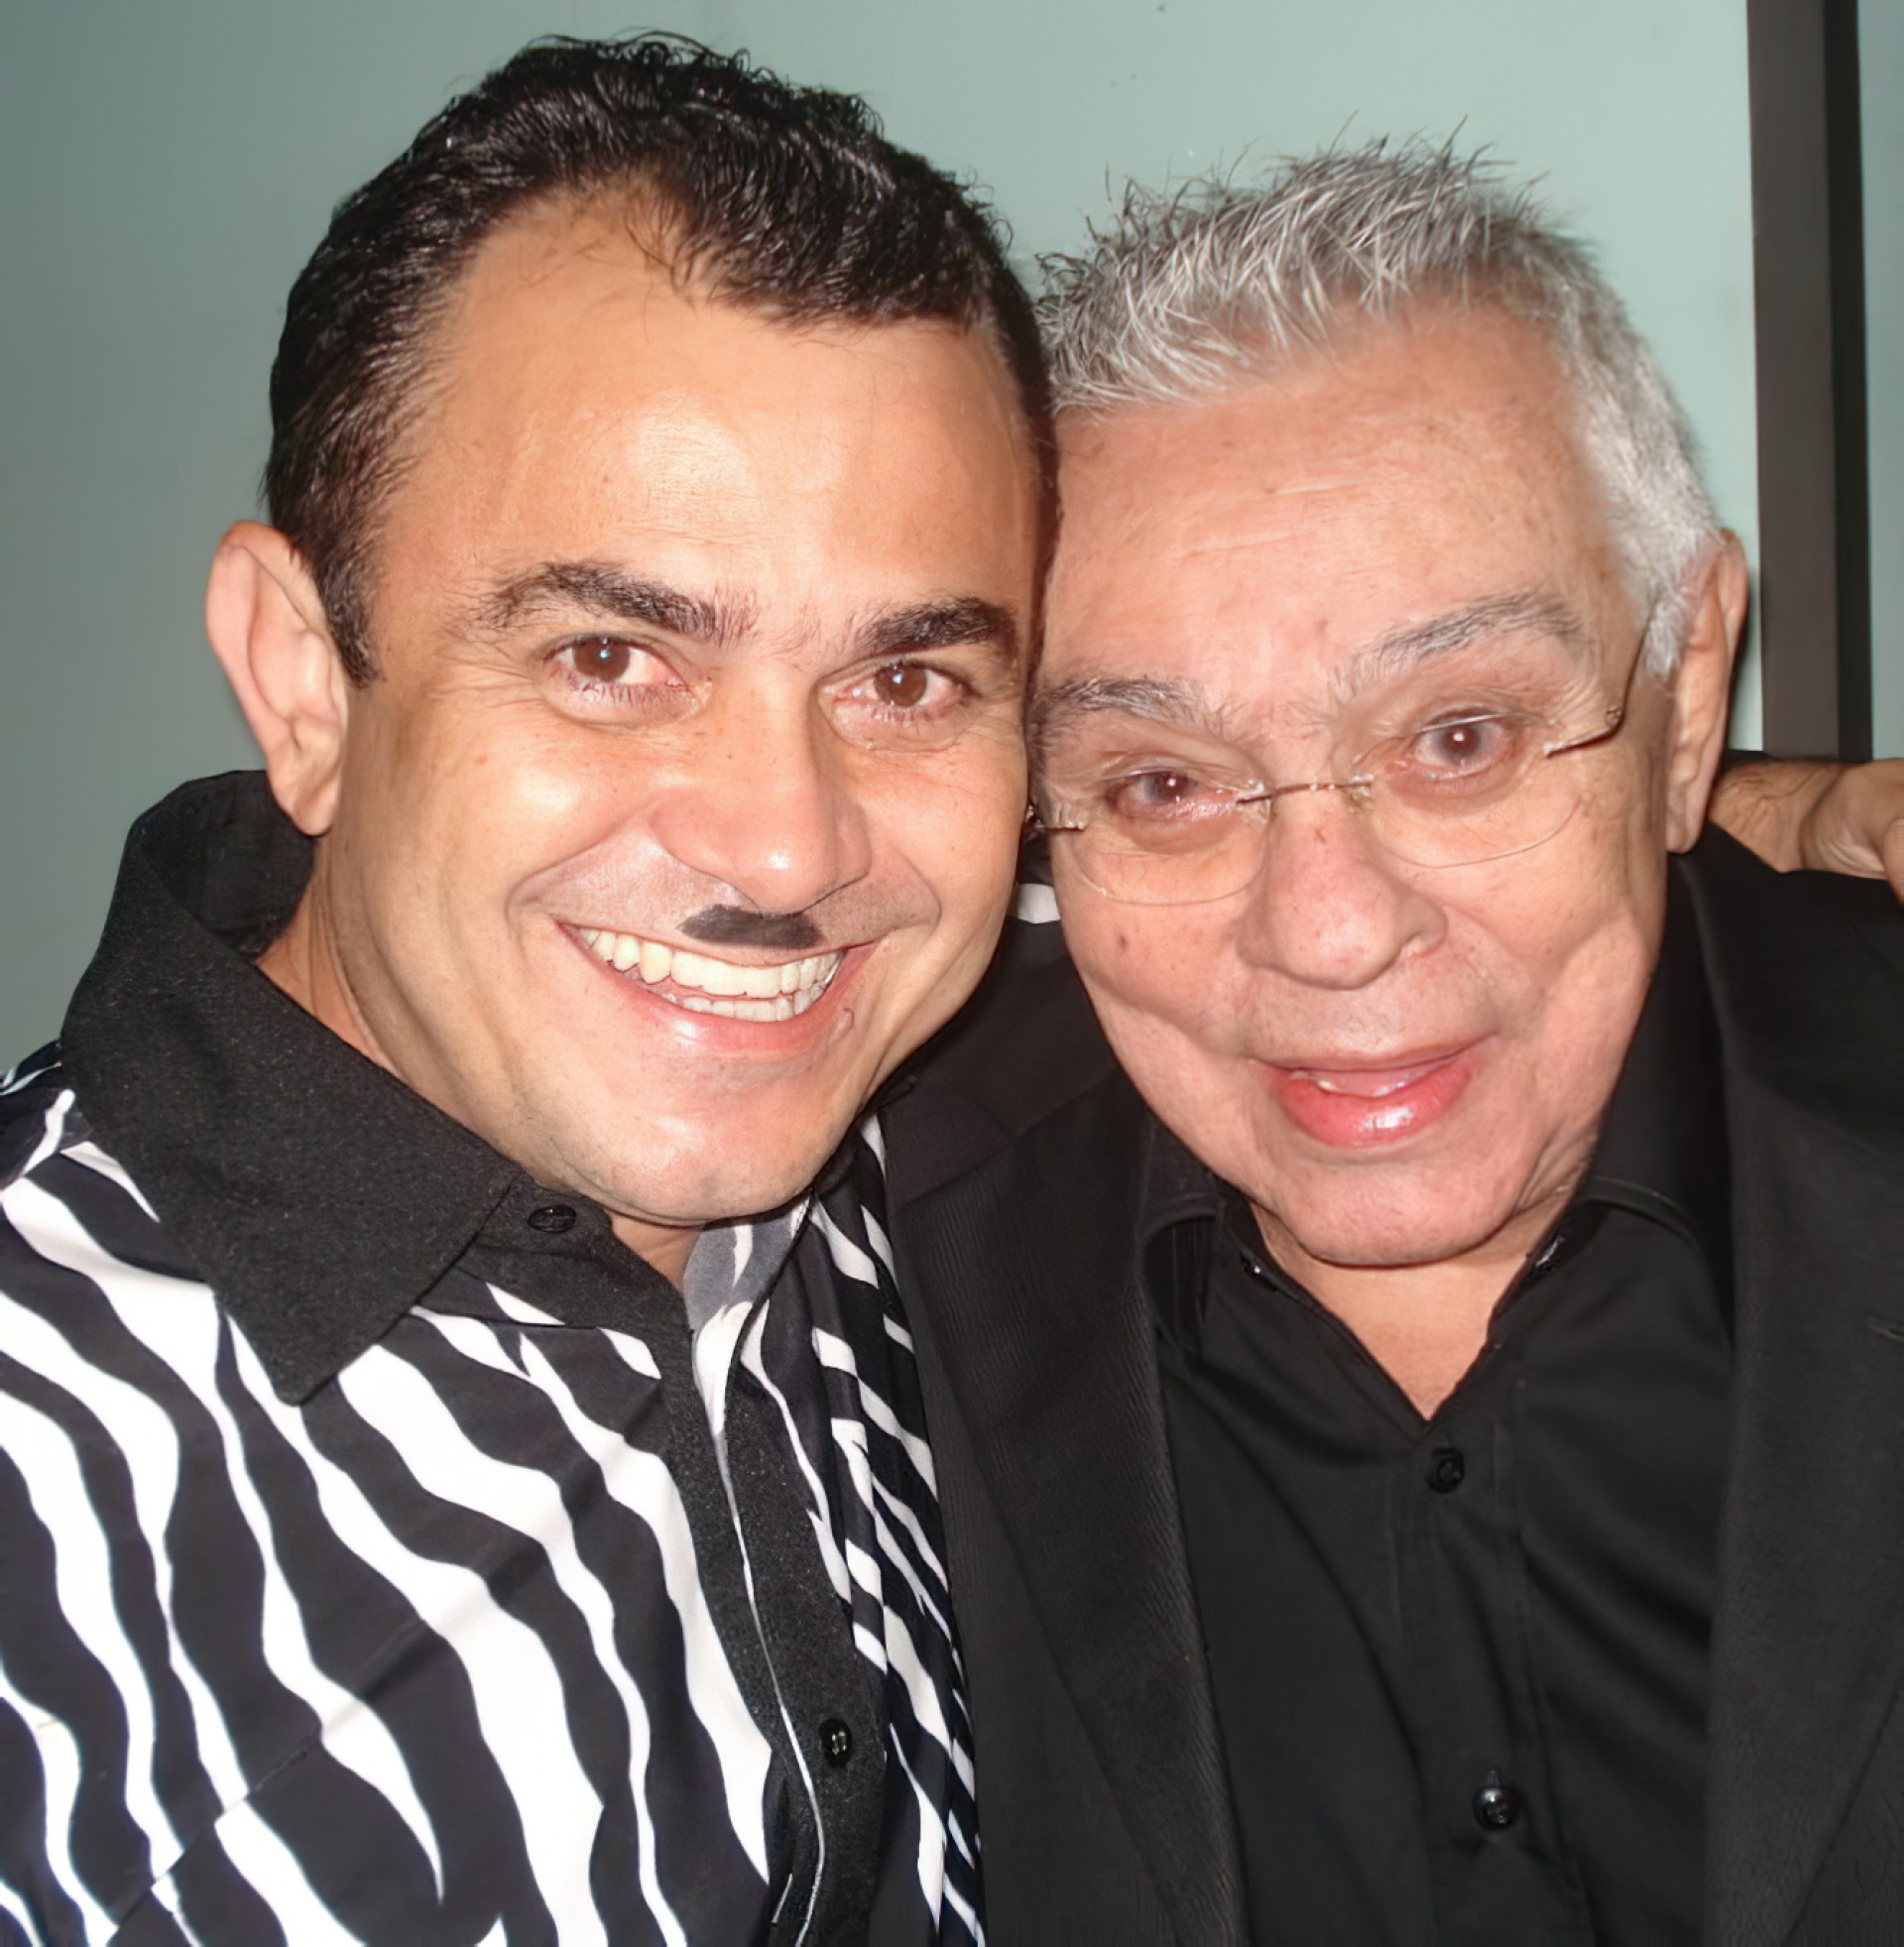 Jader Soares, o Zebrinha, e Chico Anysio, em arquivo pessoal de 2008(Foto: Acervo pessoal/Jader Soares)